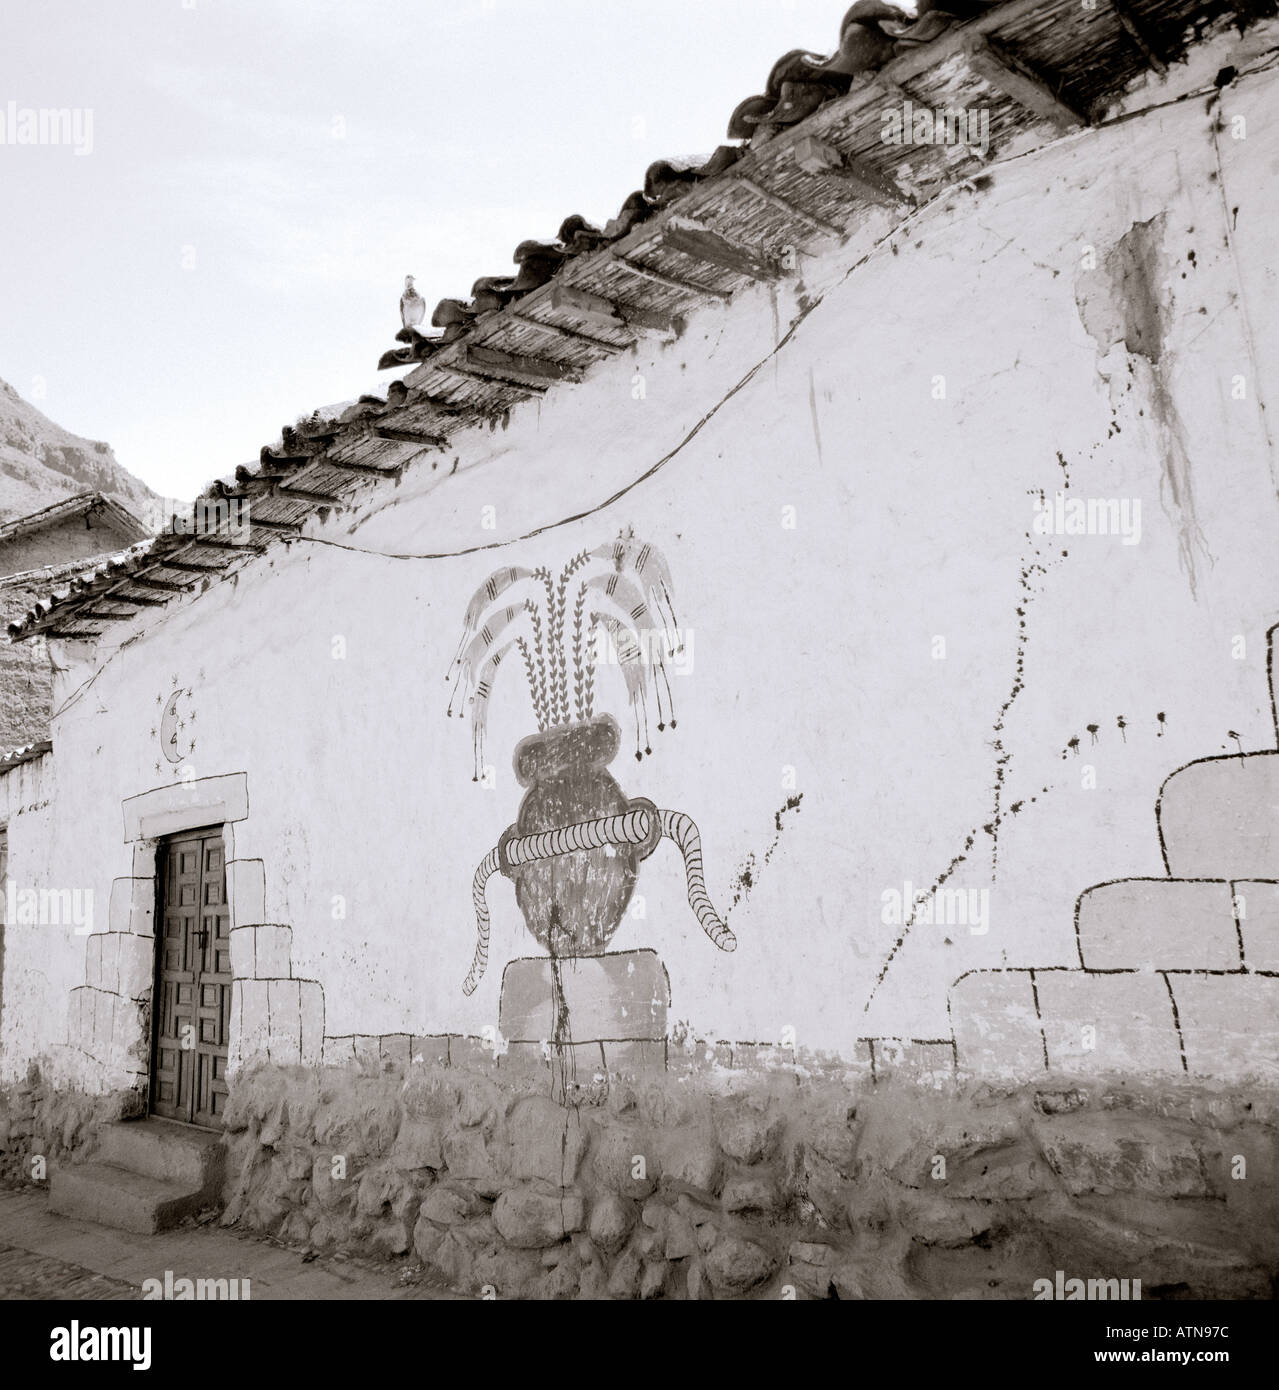 L'art de mur dans l'ancienne ville Inca de Pisac dans la vallée sacrée dans les Andes péruviennes au Pérou en Amérique du Sud. Voyage d'art Banque D'Images